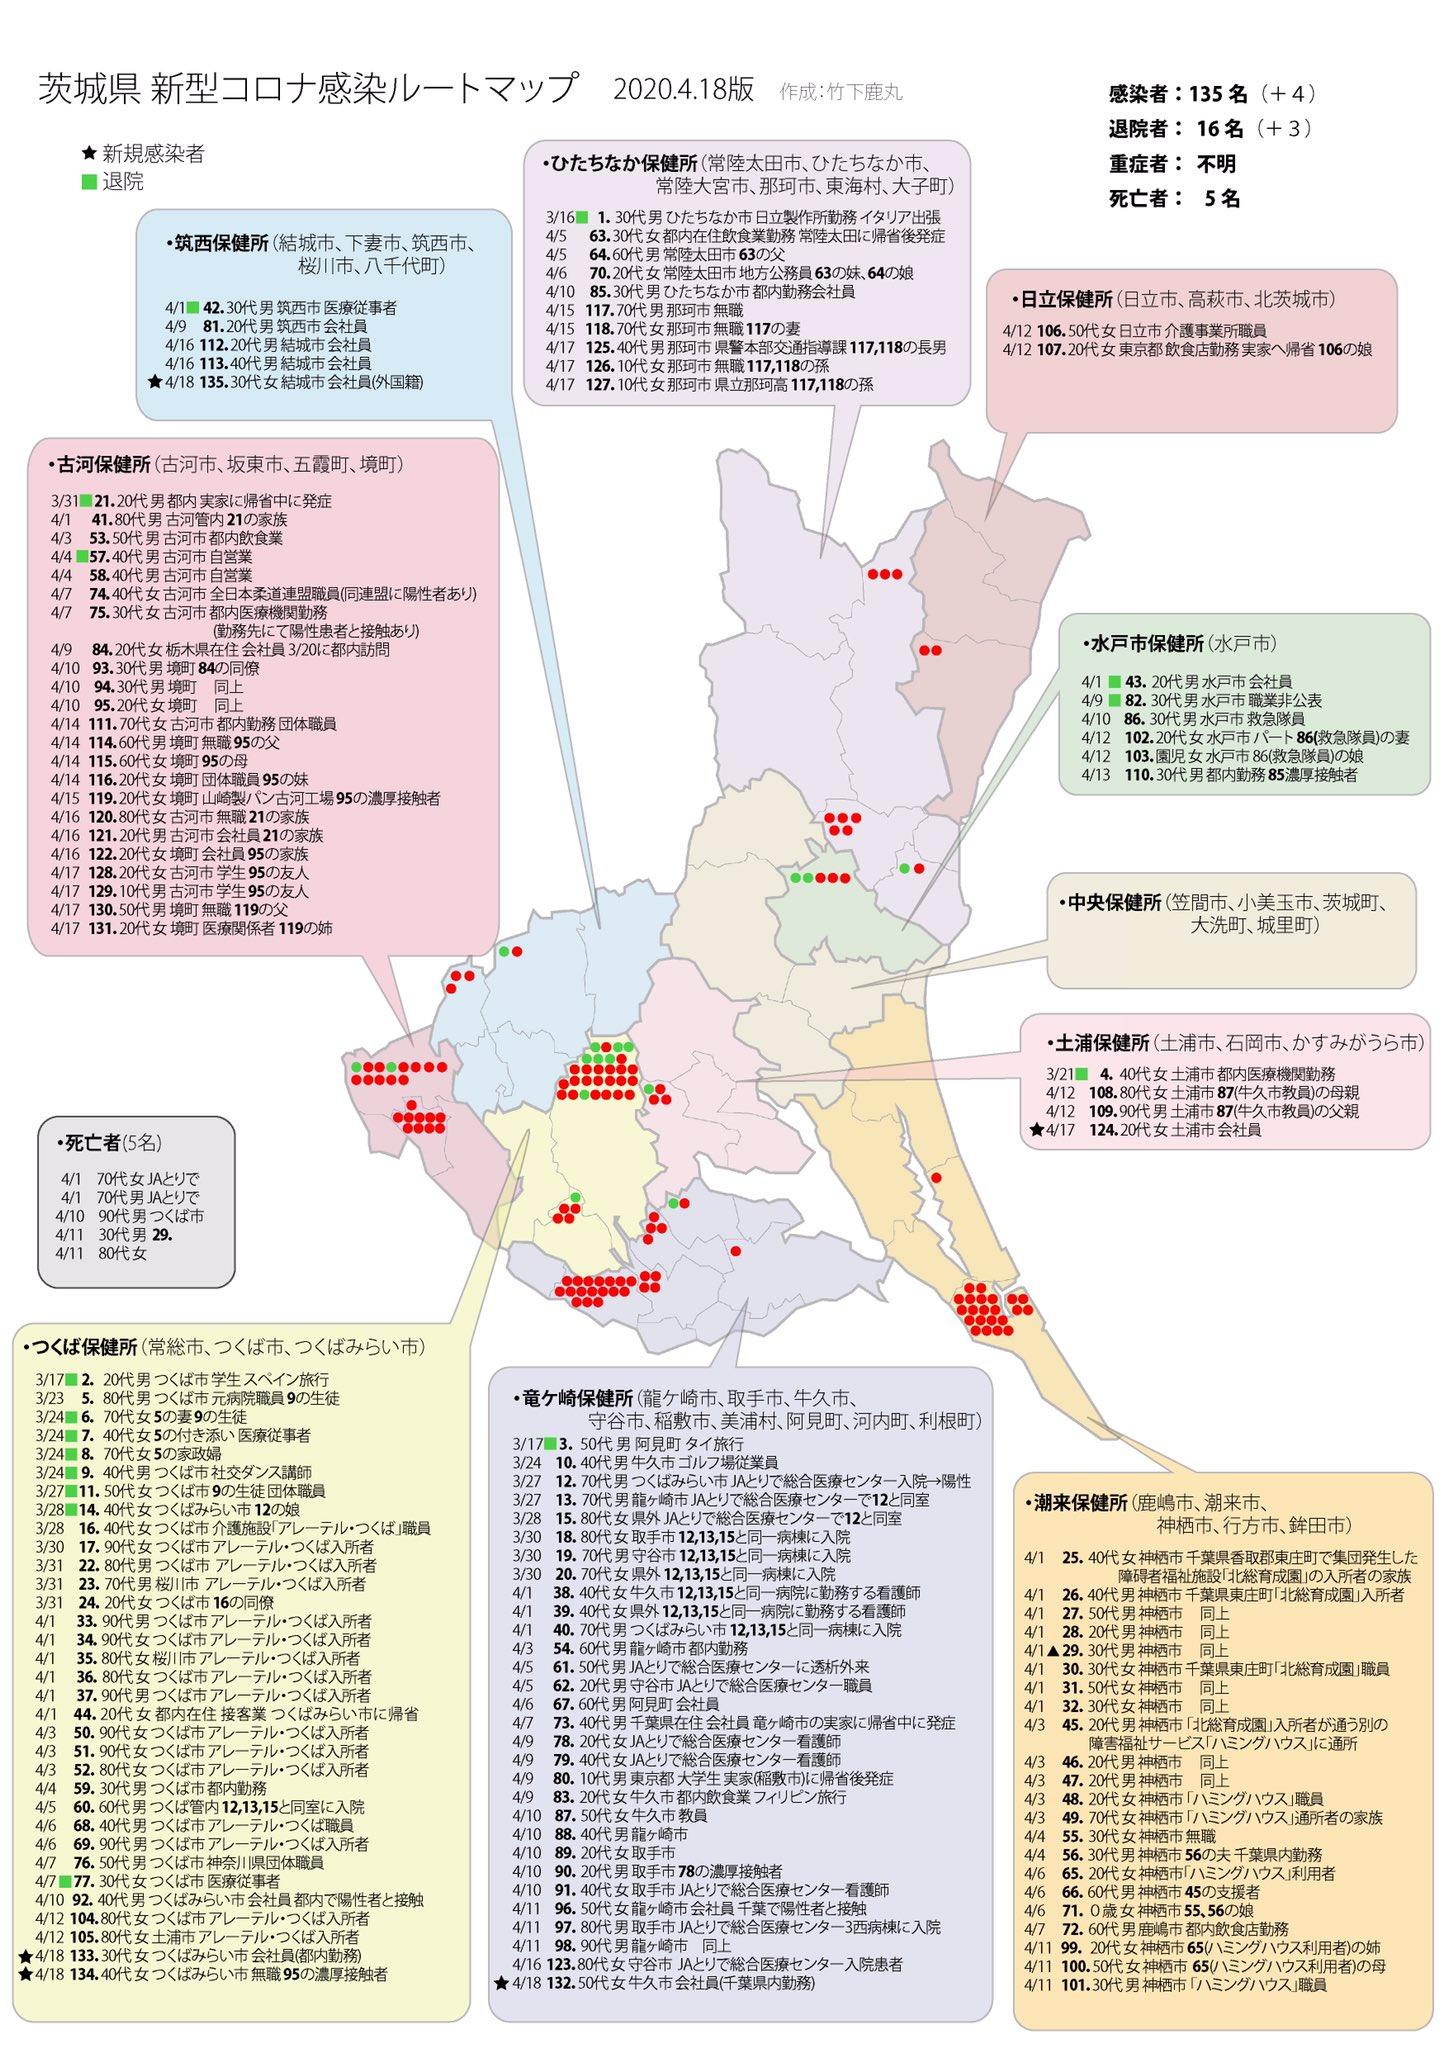 お隣、茨城県のマップです。100人超えて...